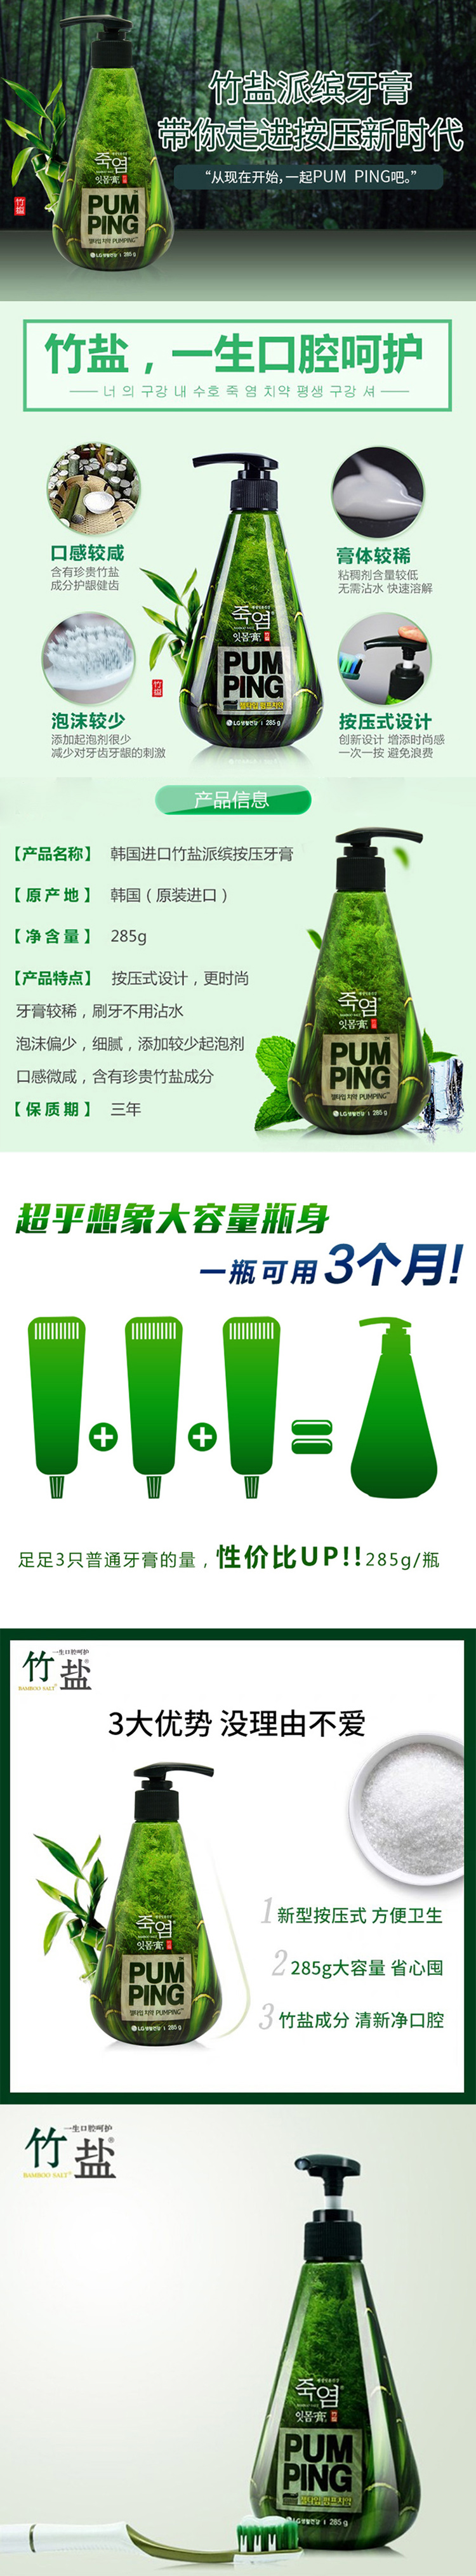 韩国进口正品LG竹盐 派缤液体按压式牙膏 清新口气去口臭 薄荷味 285g